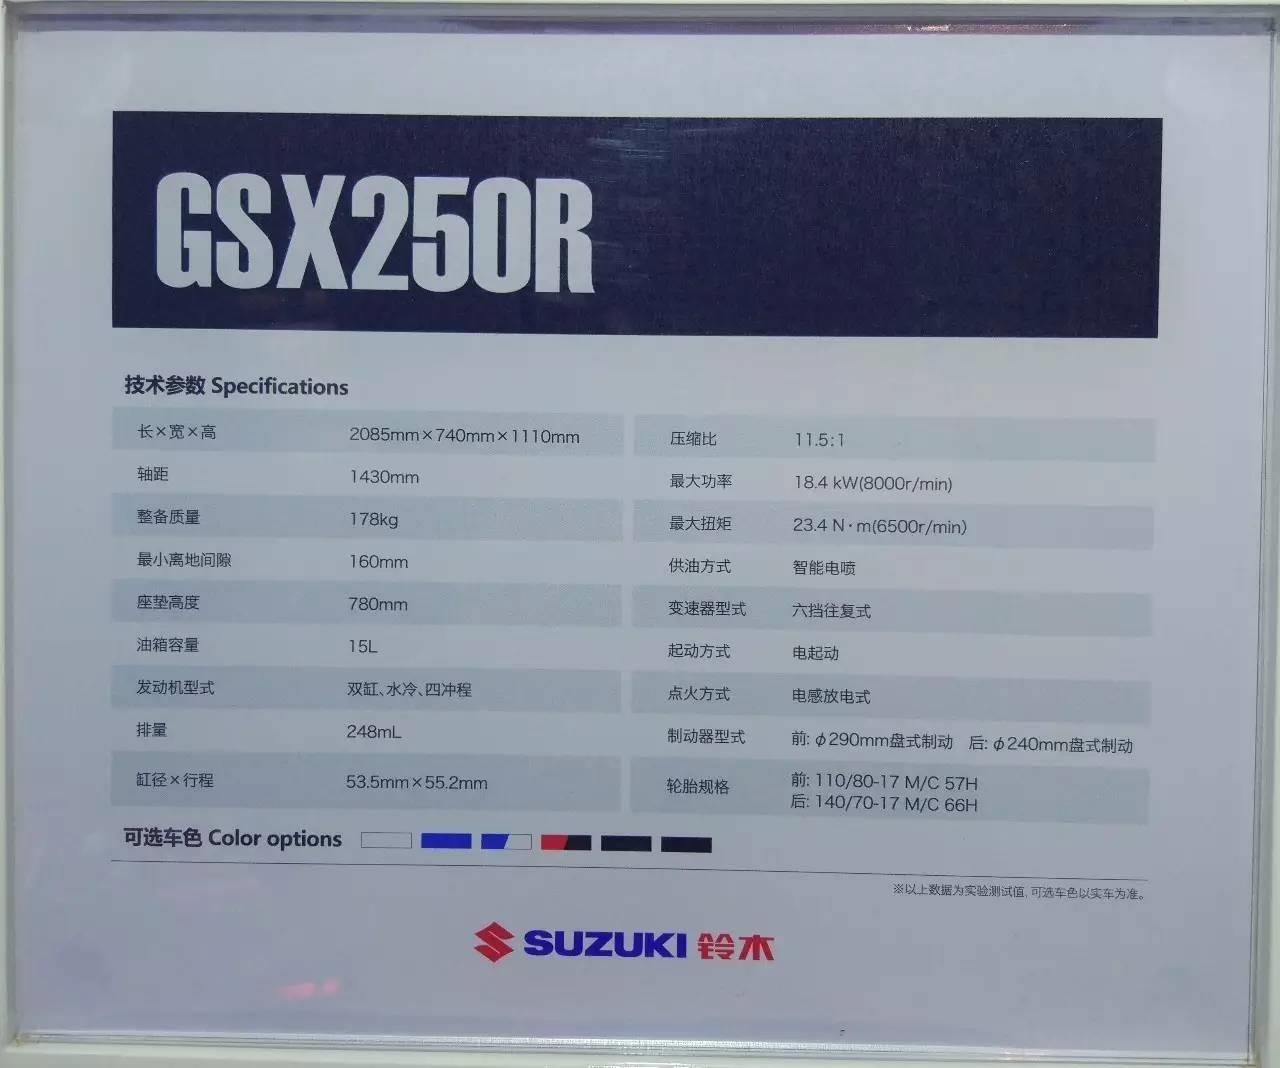 苍了天了！五年等一回，一回十辆车——豪爵铃木发布GSX-250R等十款车型！